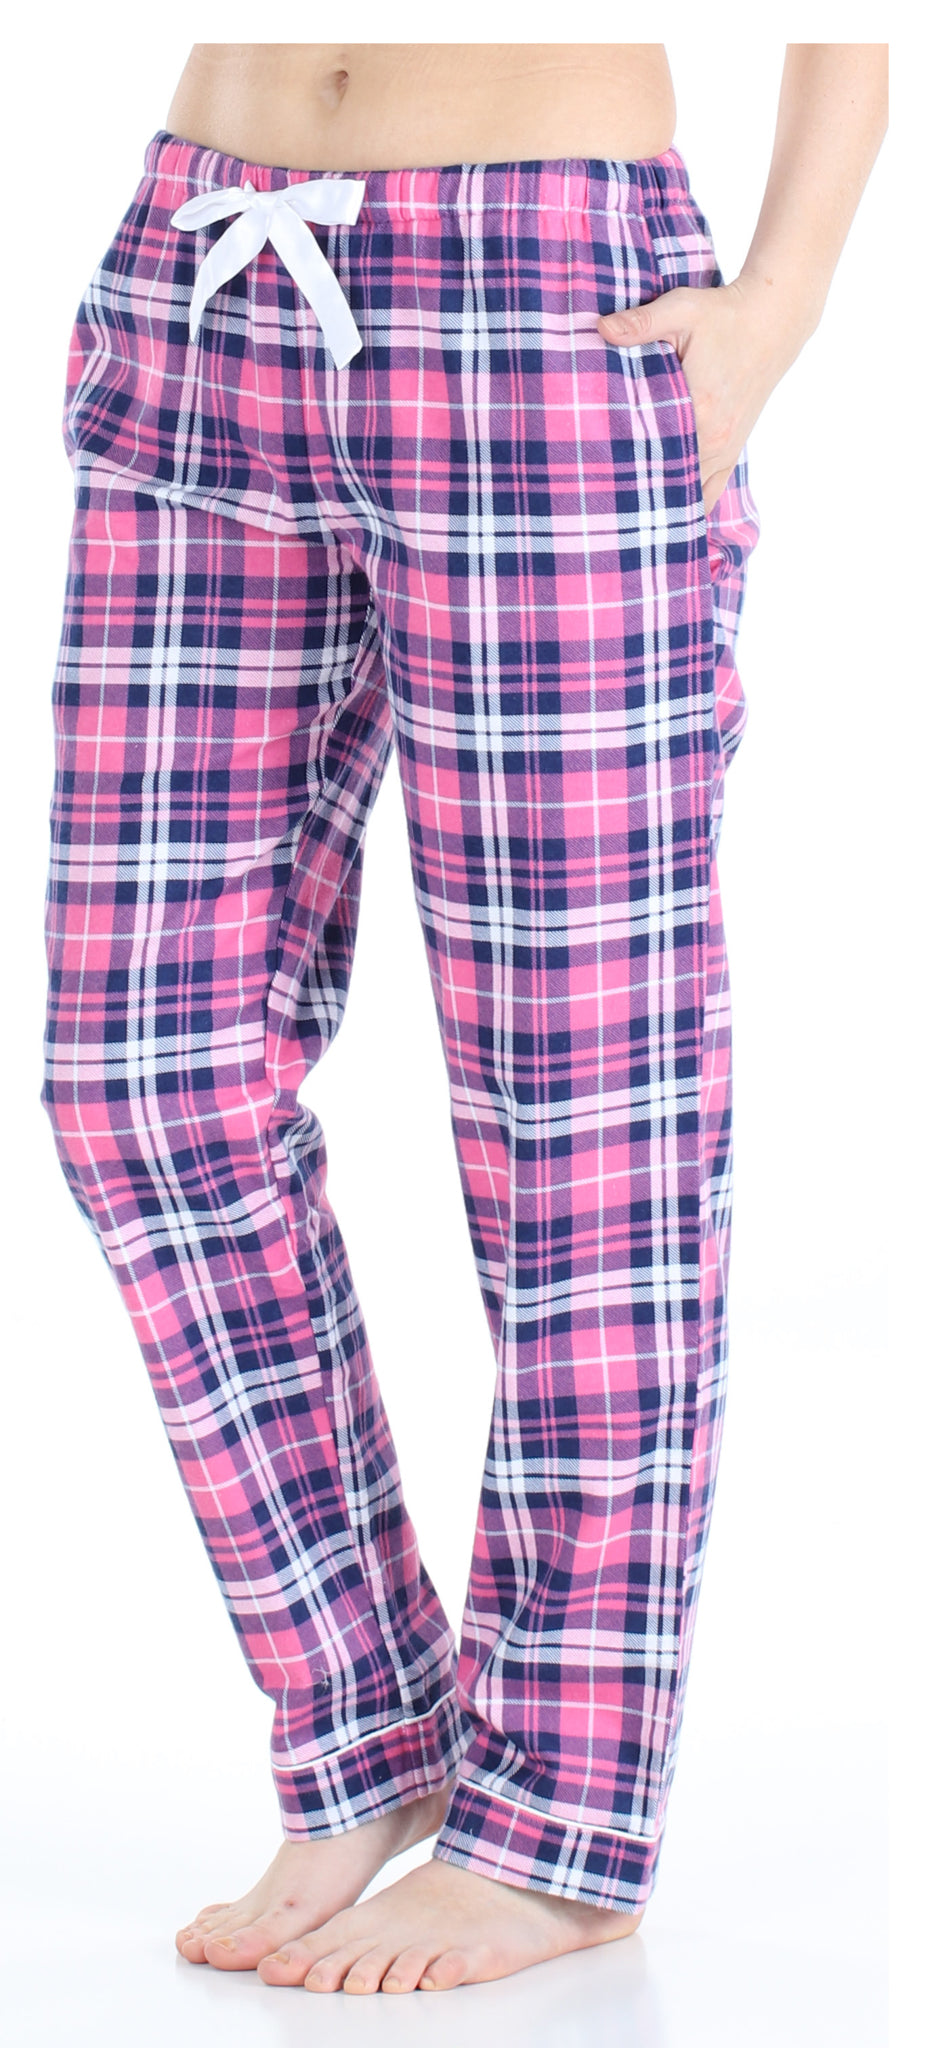 PajamaMania Women’s Cotton Flannel Pajama PJ Pants